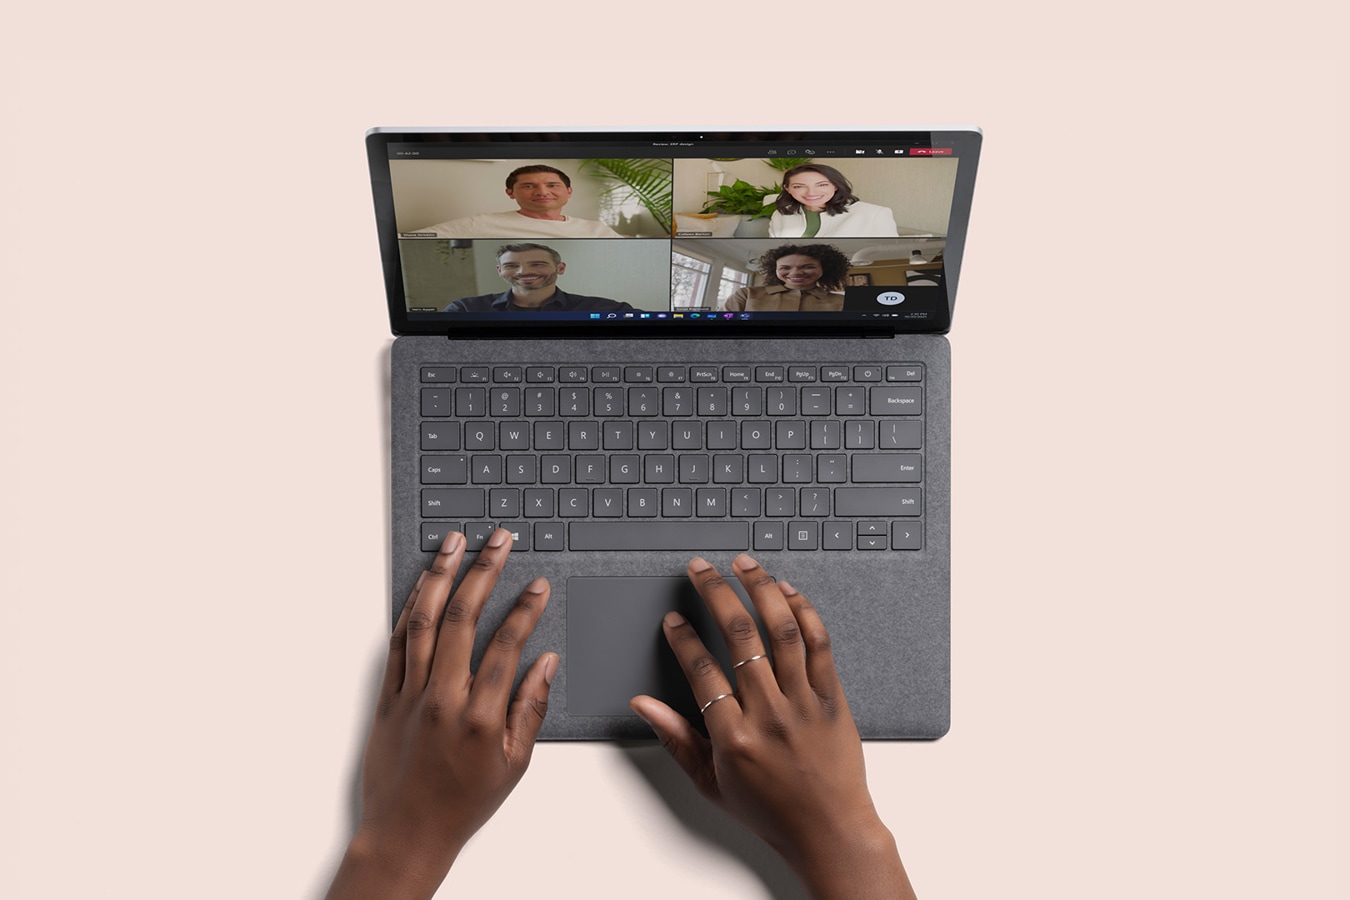 Vista superior de um dispositivo Laptop 4 em Platina com o Microsoft Teams no ecrã
